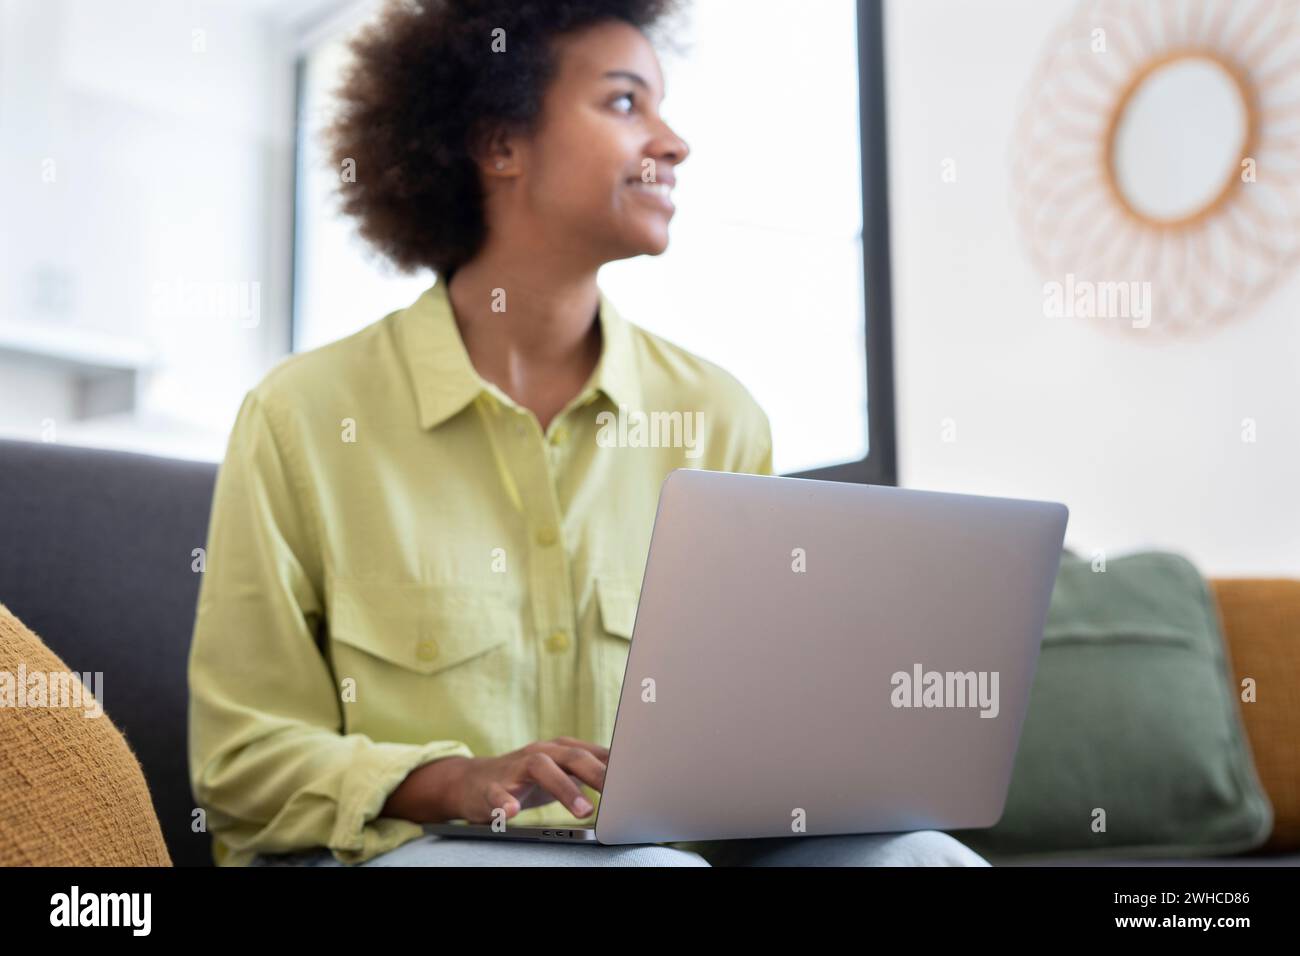 Souriant jeune femme noire à l'aide d'un ordinateur portable, reposant sur un canapé confortable, parler sur un appel vidéo, discuter en ligne, naviguer sur Internet, regarder un film, faire des achats sur Internet. Utilisateur de gadget numérique paresseux Banque D'Images